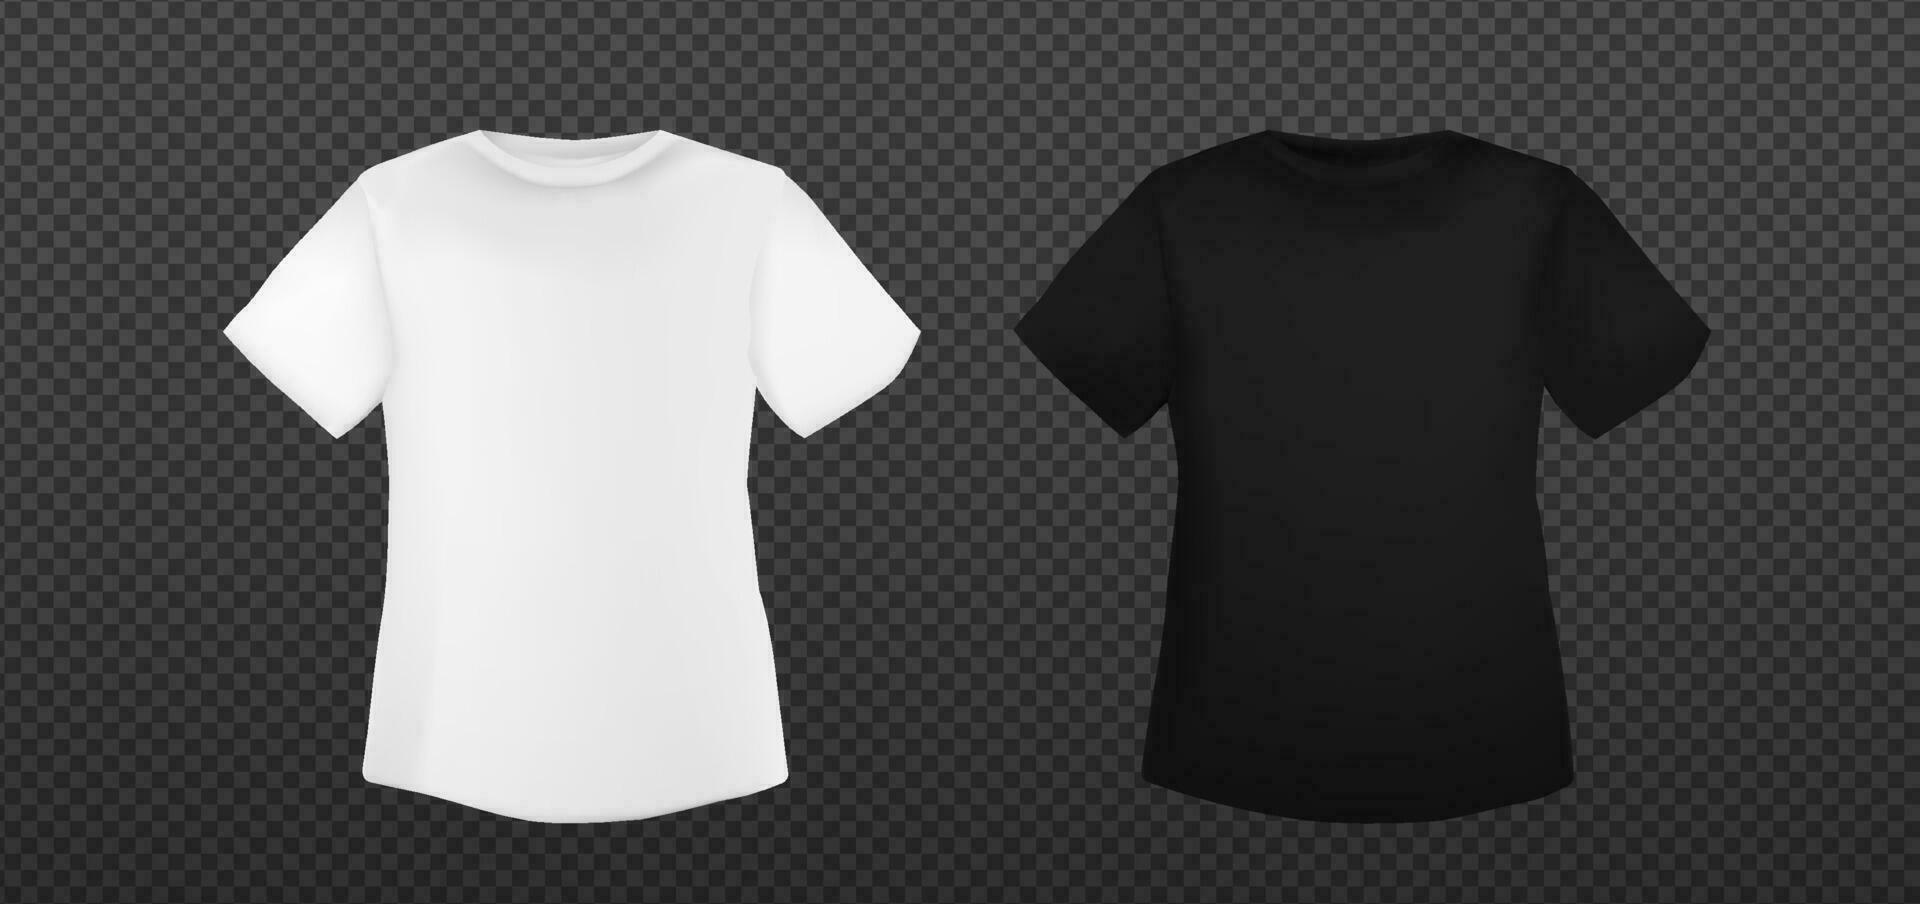 Weiß und schwarz Übergröße T-Shirt Vorlage. t Hemd Attrappe, Lehrmodell, Simulation leer vektor